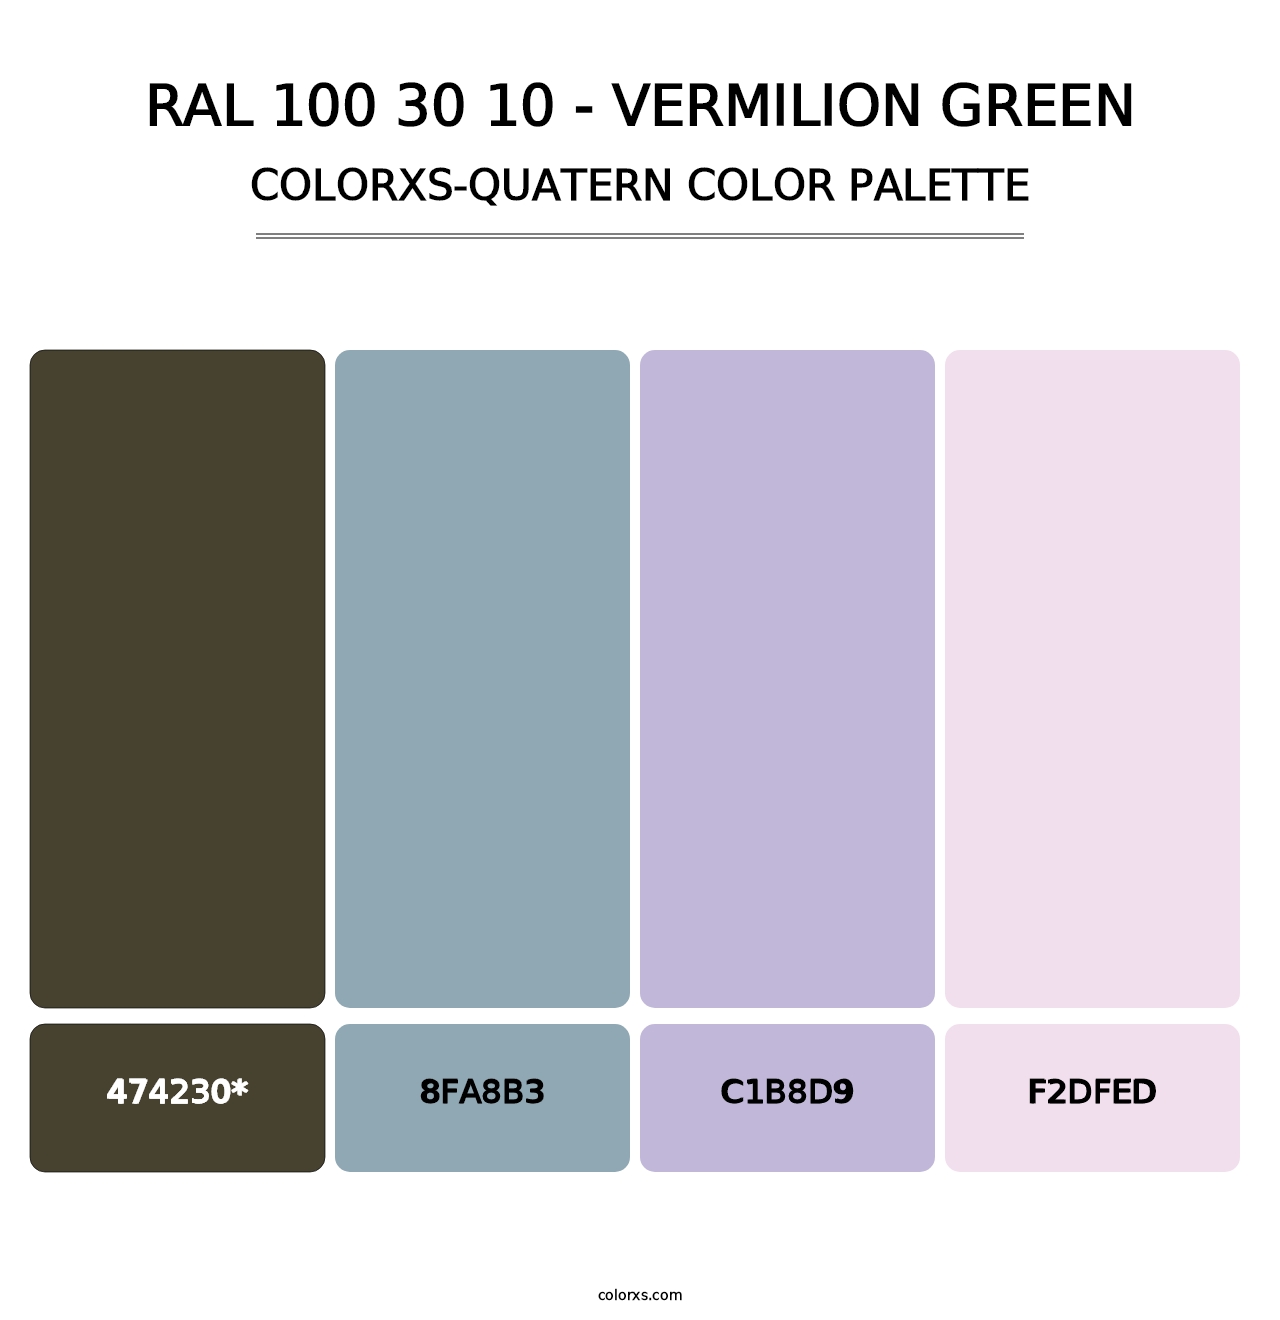 RAL 100 30 10 - Vermilion Green - Colorxs Quatern Palette